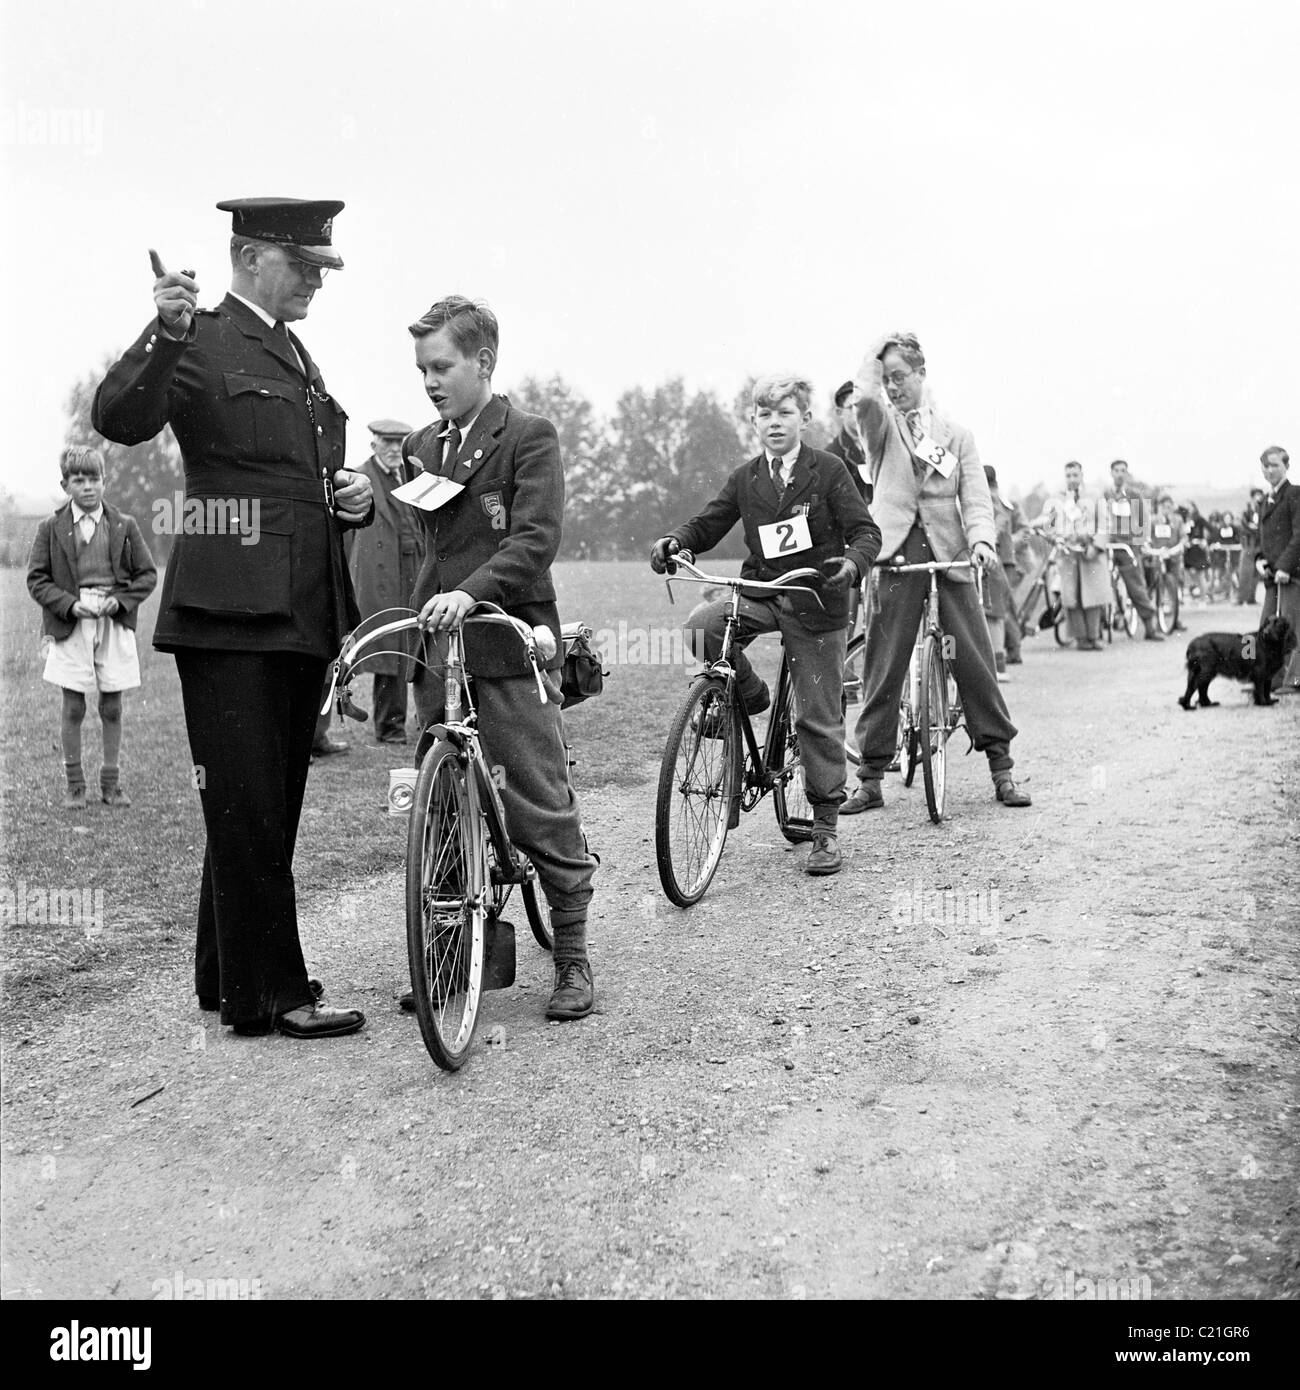 1950s, historisch, draußen auf einem Pfad, beginnt ein Polizist junge Schüler mit ihrem Radfahrfähigungstest, London, England, Großbritannien. Stockfoto